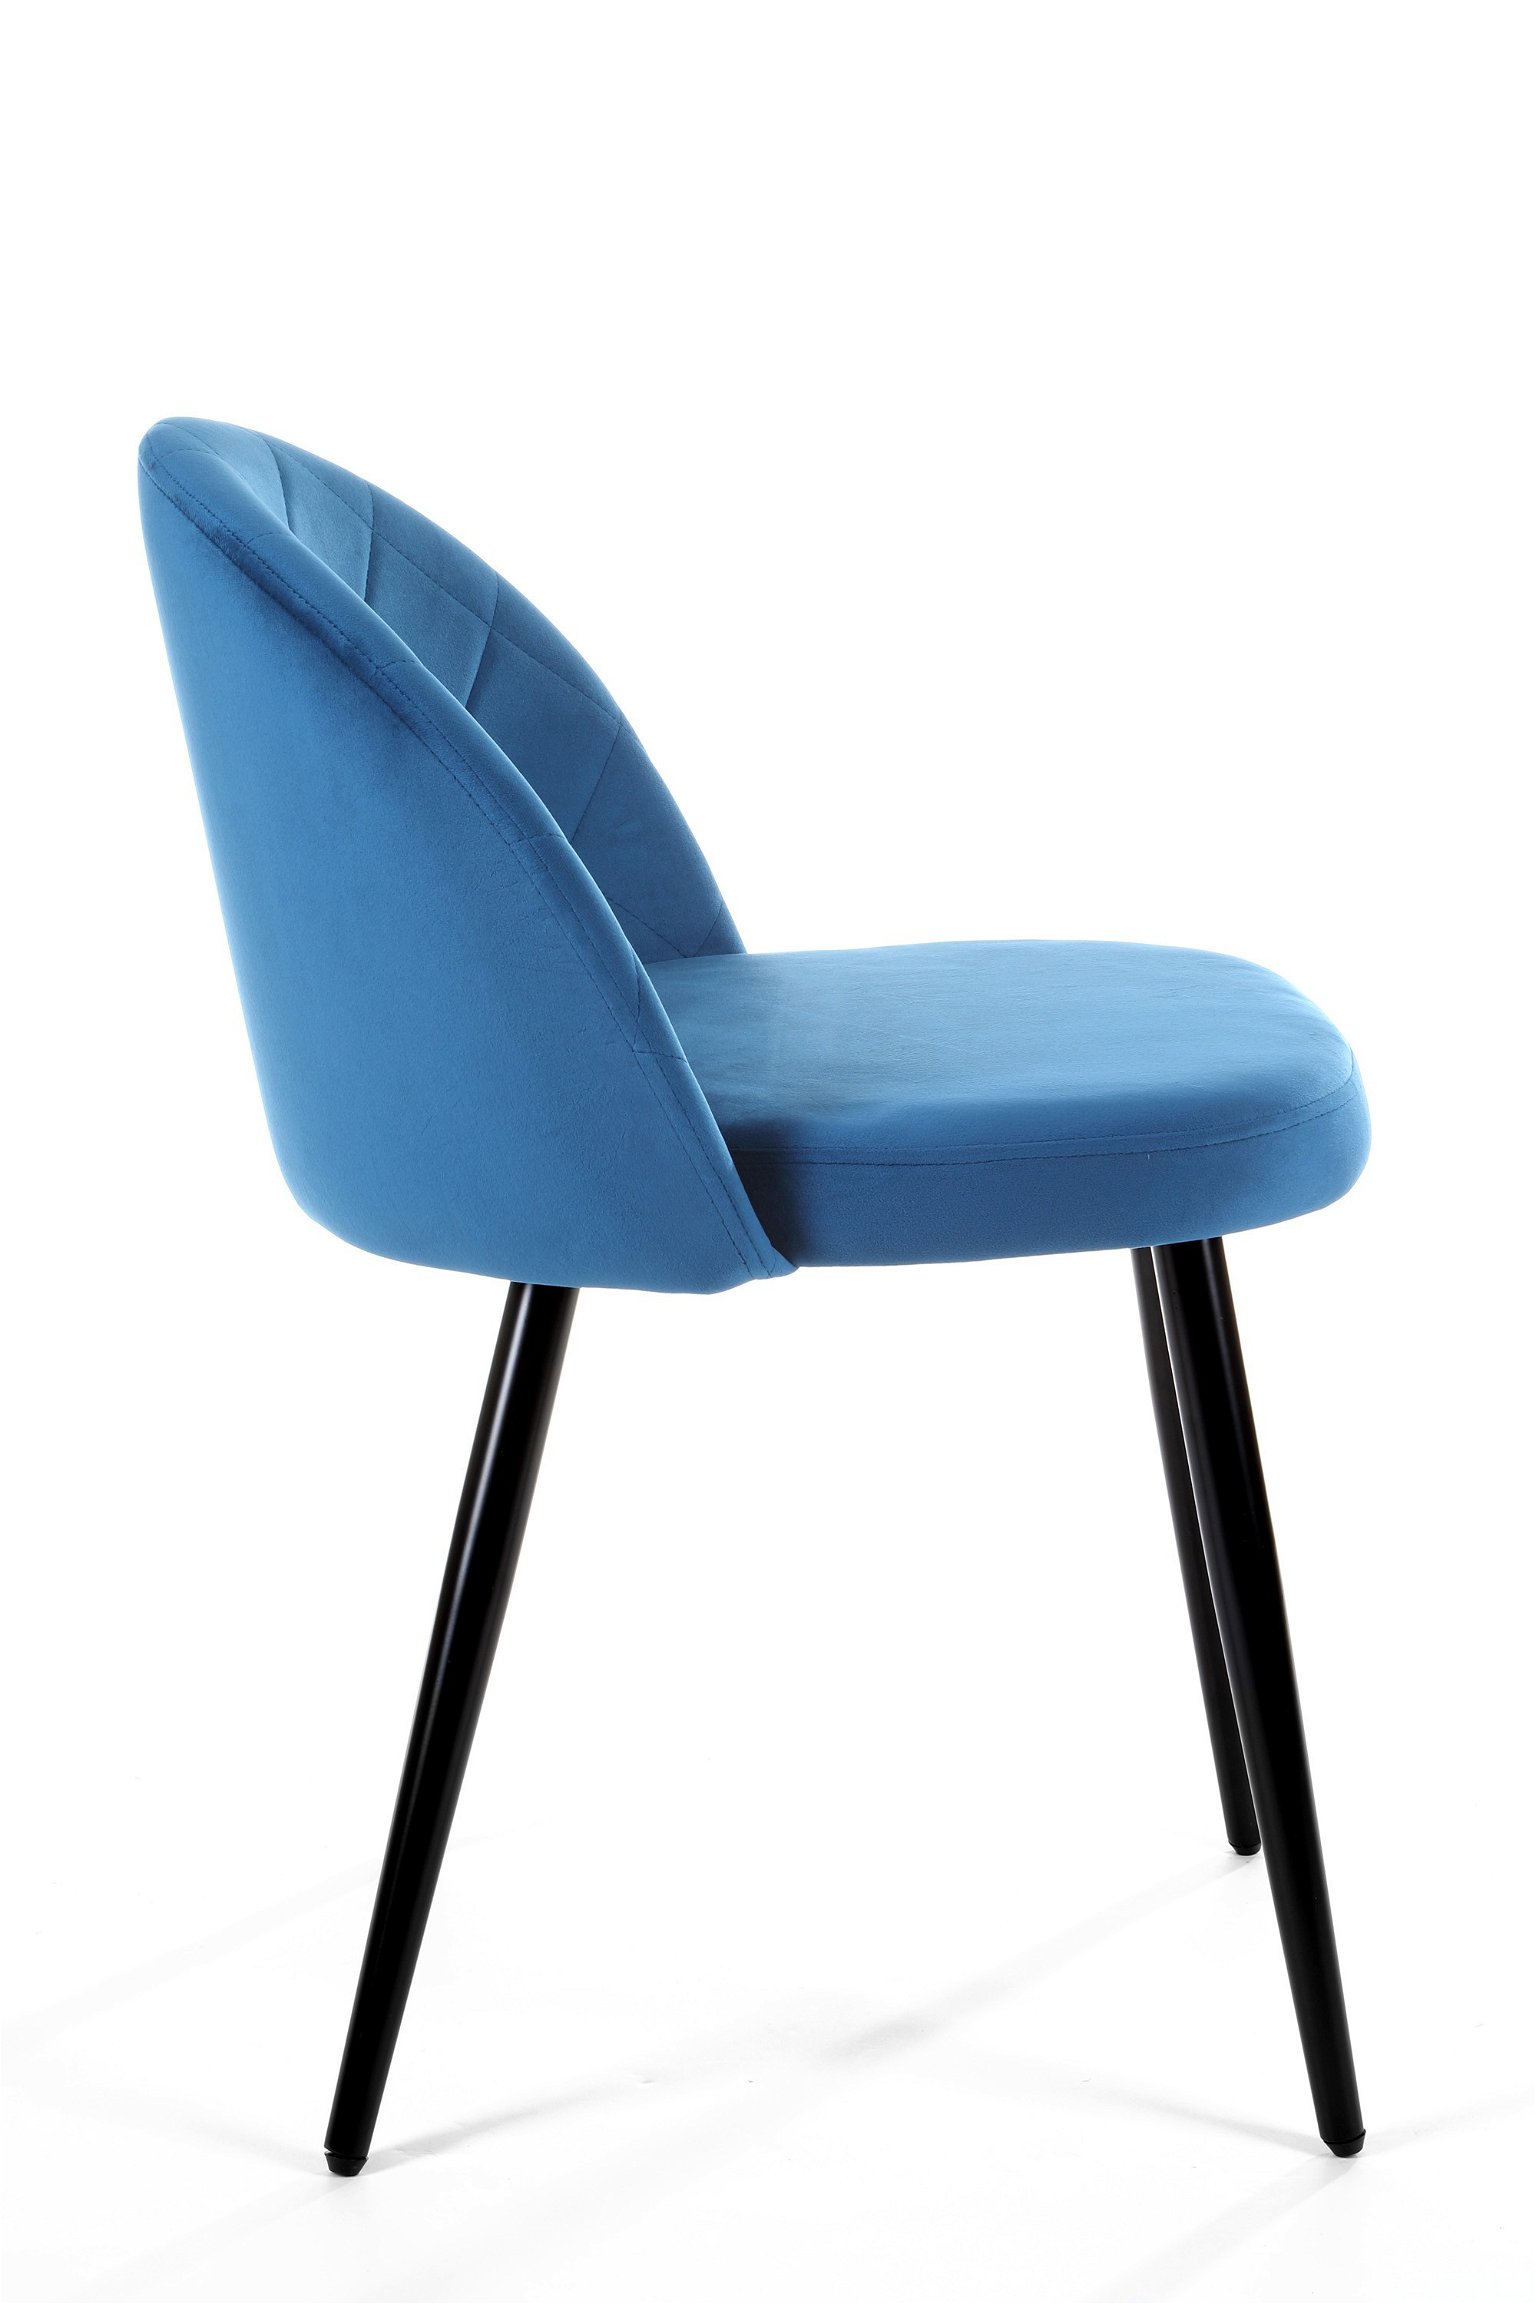 4-ių kėdžių komplaktas SJ.077, tamsiai mėlyna - 3